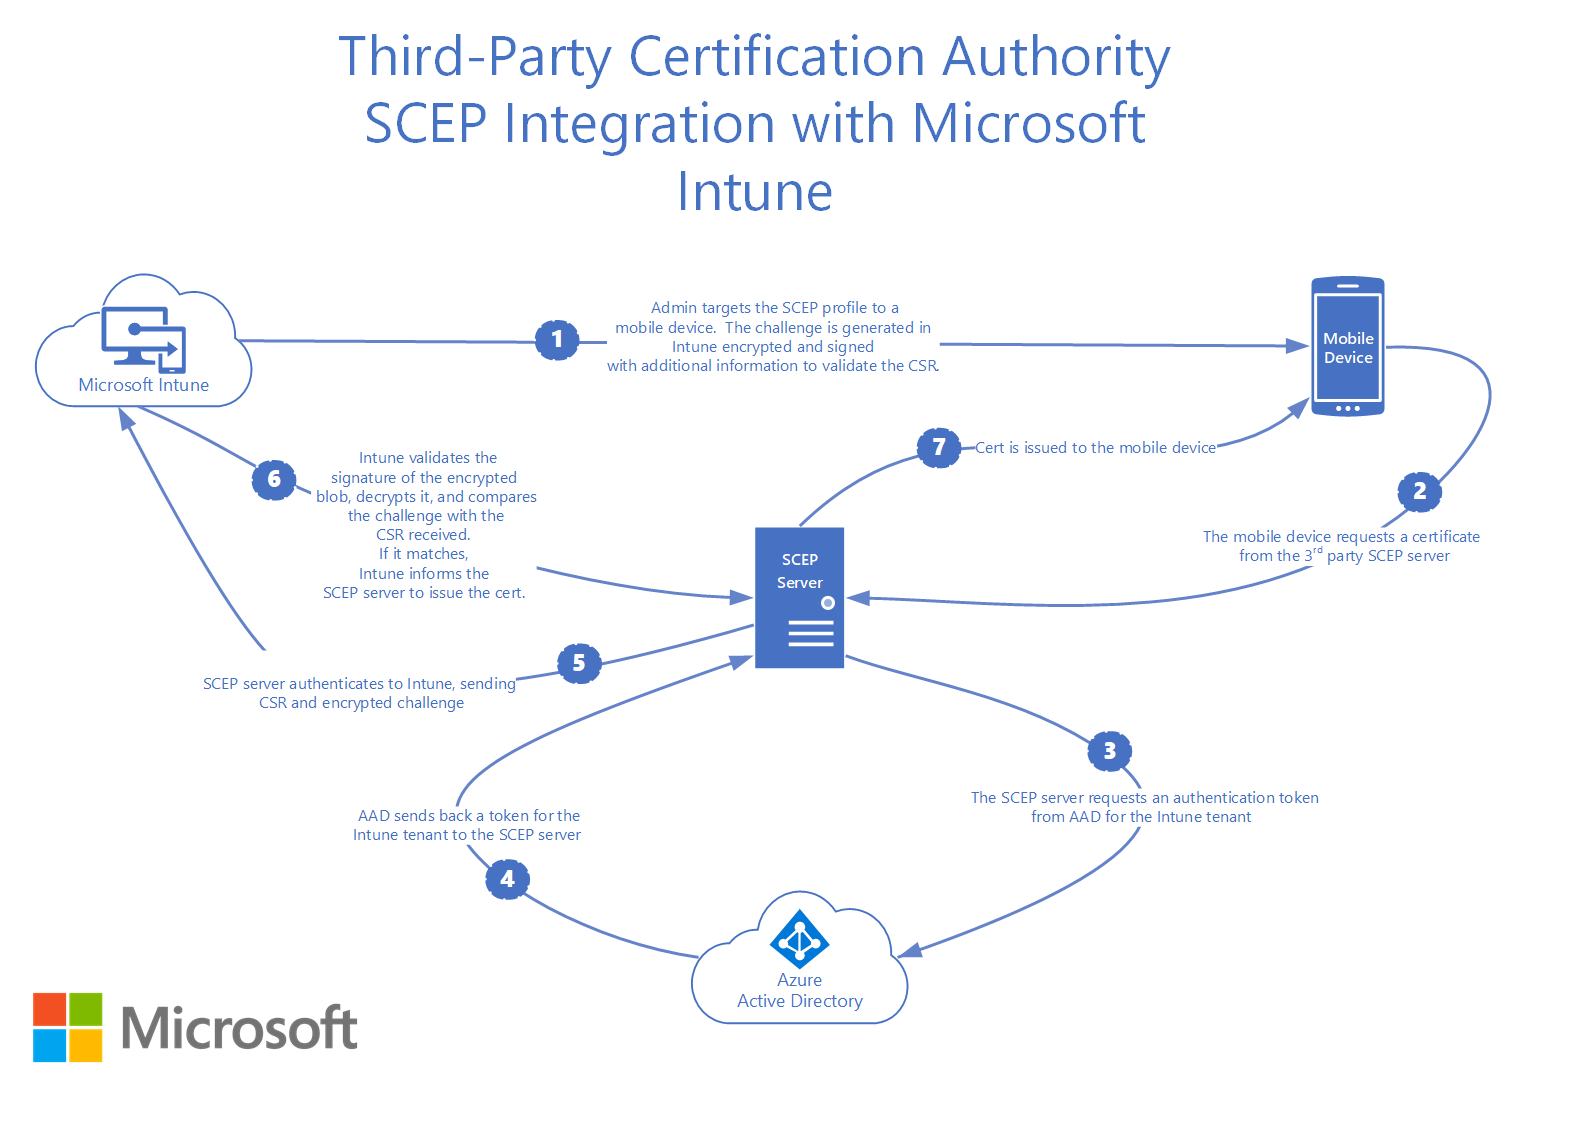 Como o SCEP de autoridade de certificação de terceiros se integra com o Microsoft Intune